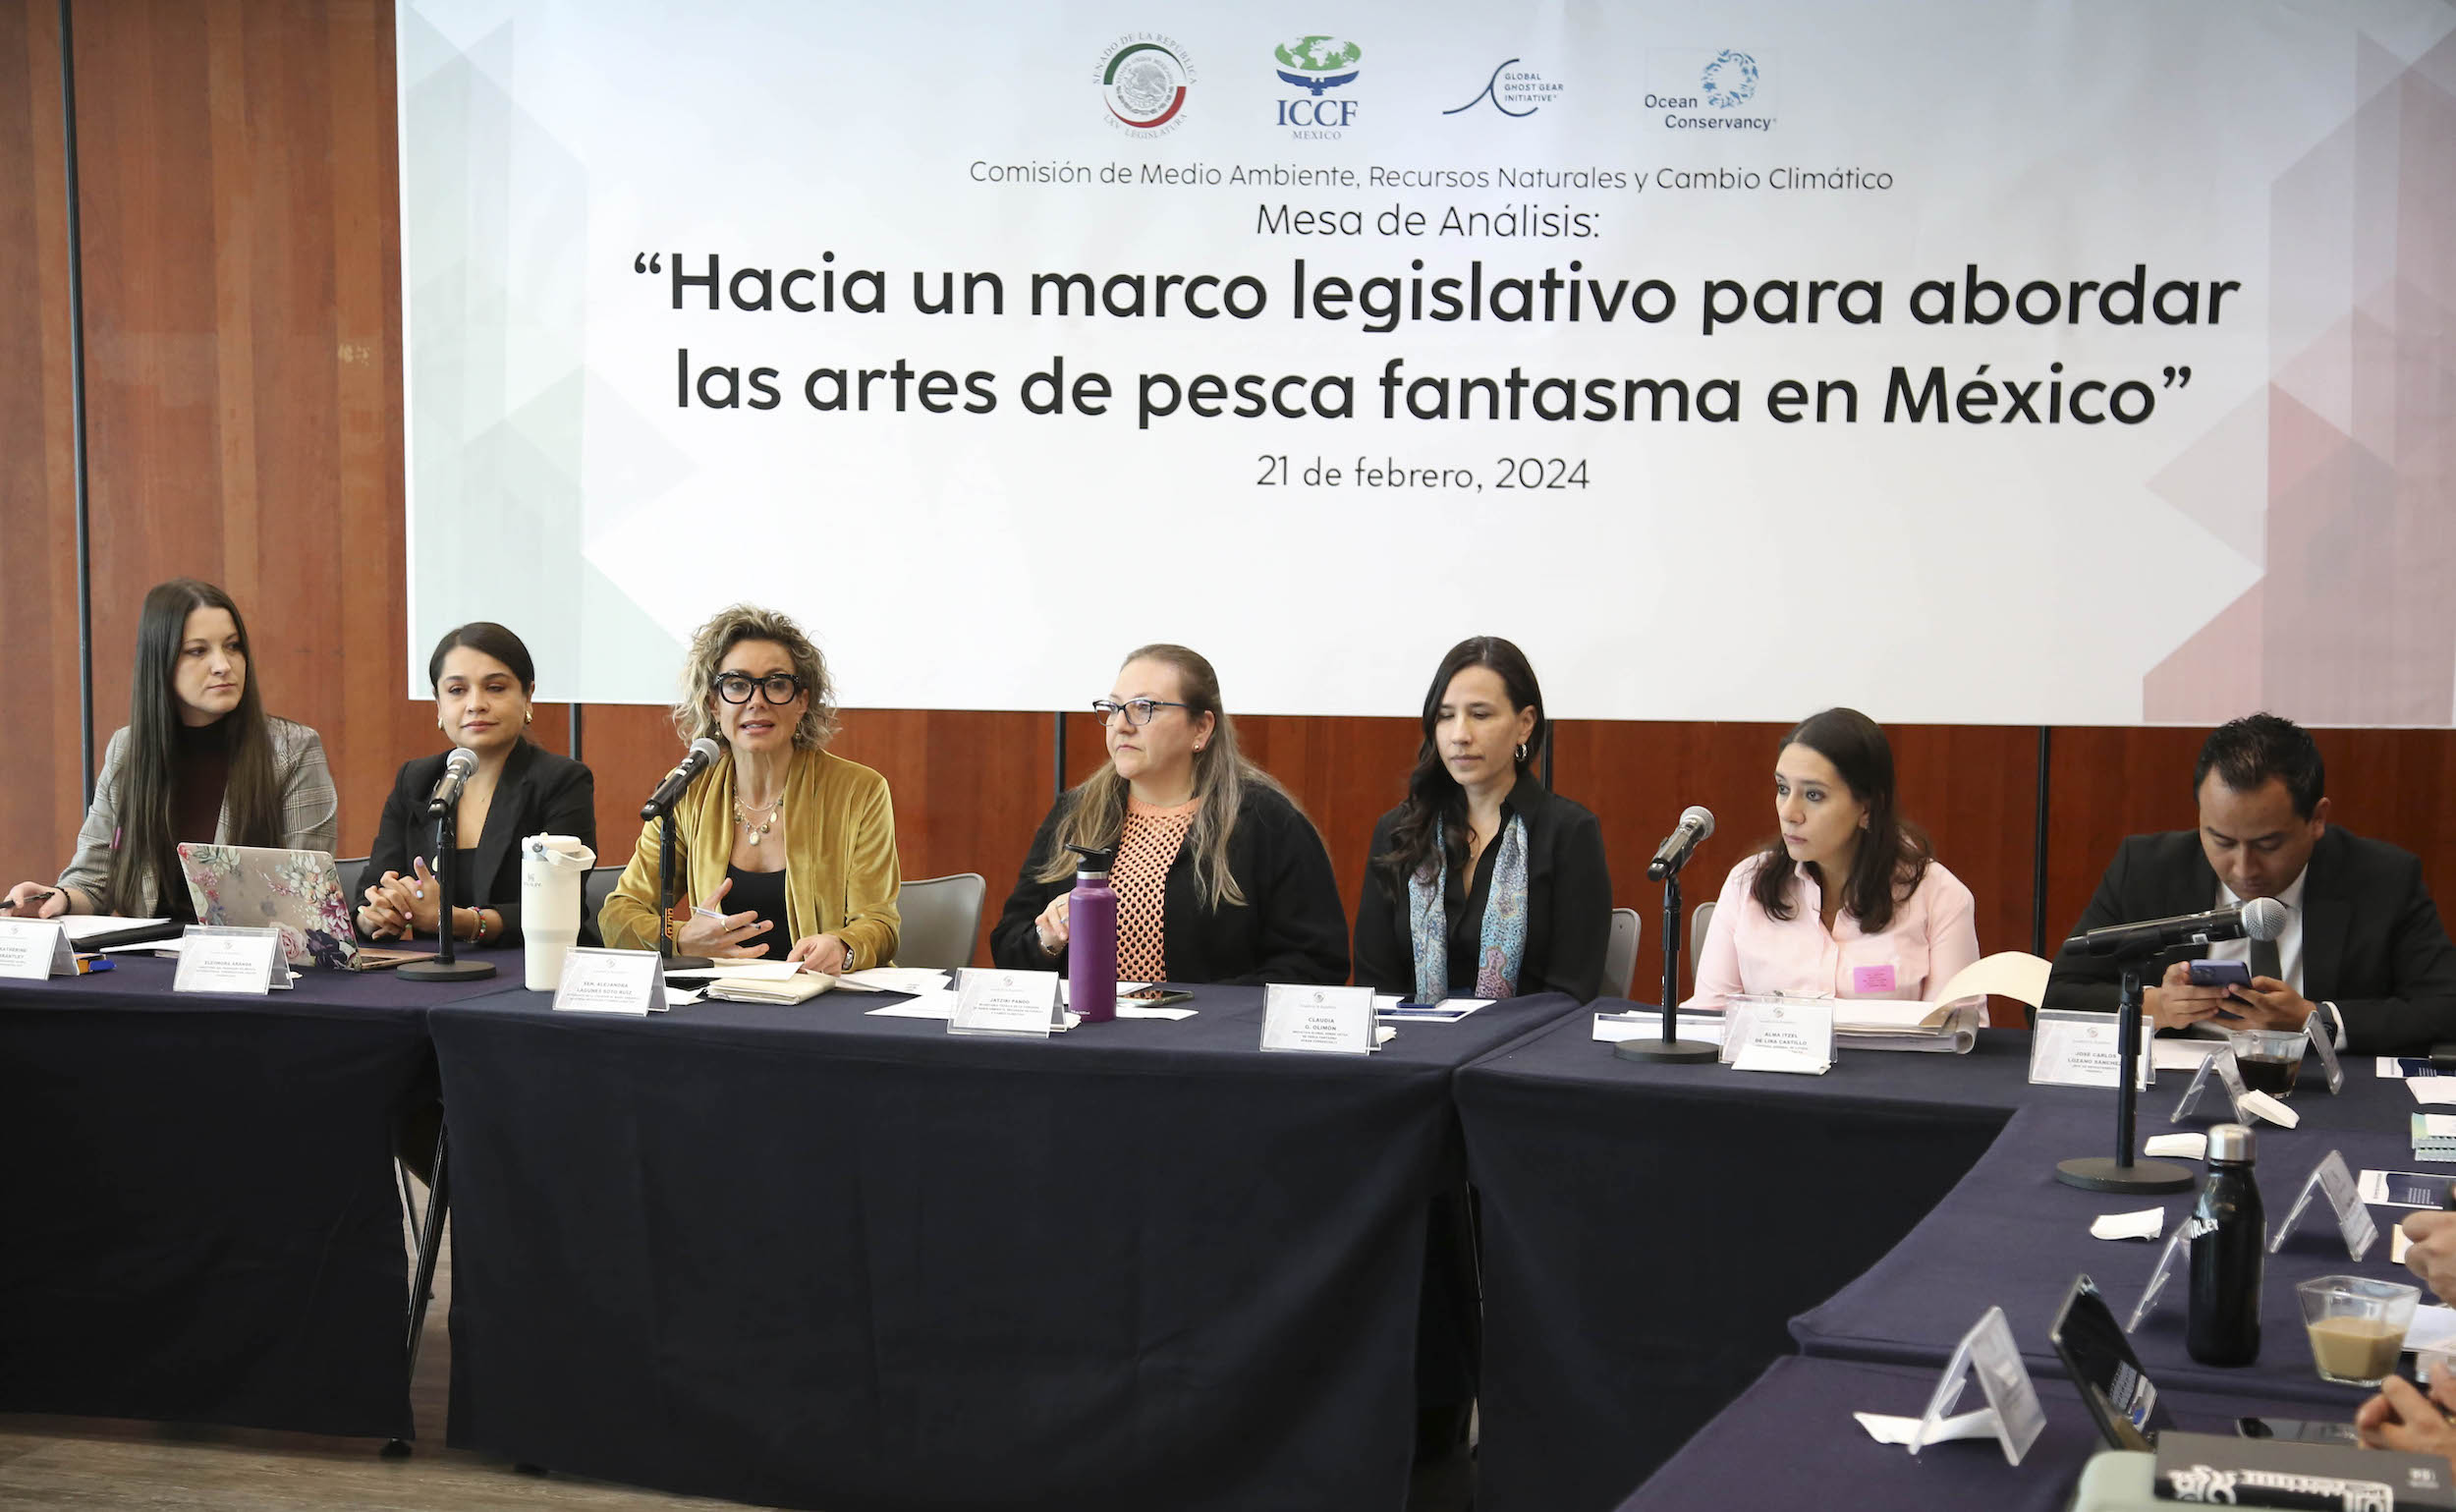 Mesa de análisis “Hacia un marco legislativo para abordar las artes de pesca fantasma en México”